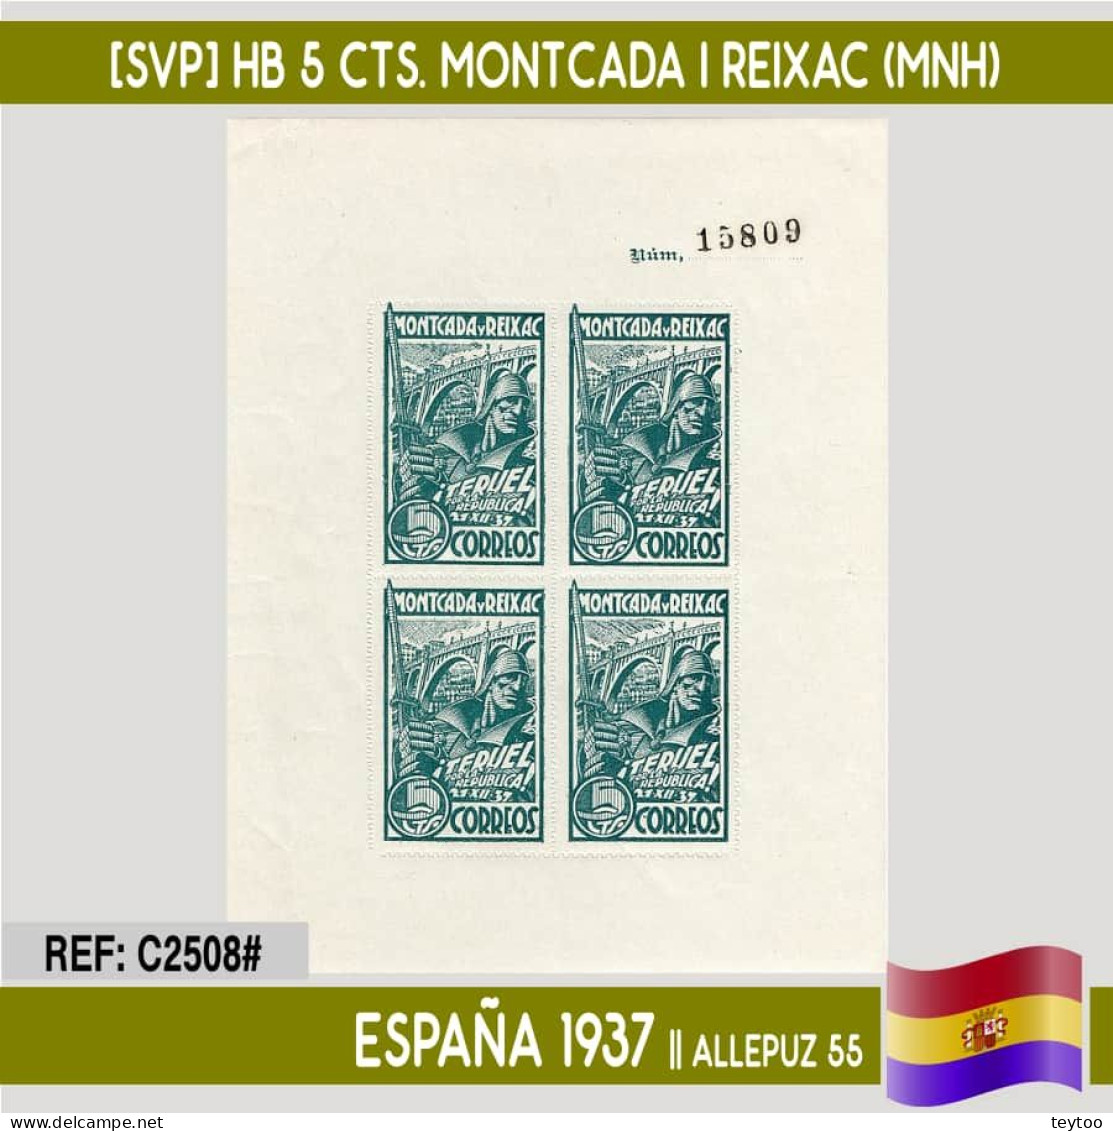 C2508# España 1937 [SVP] HB 5 Cts. Teruel Por La República (MNH) - Republican Issues